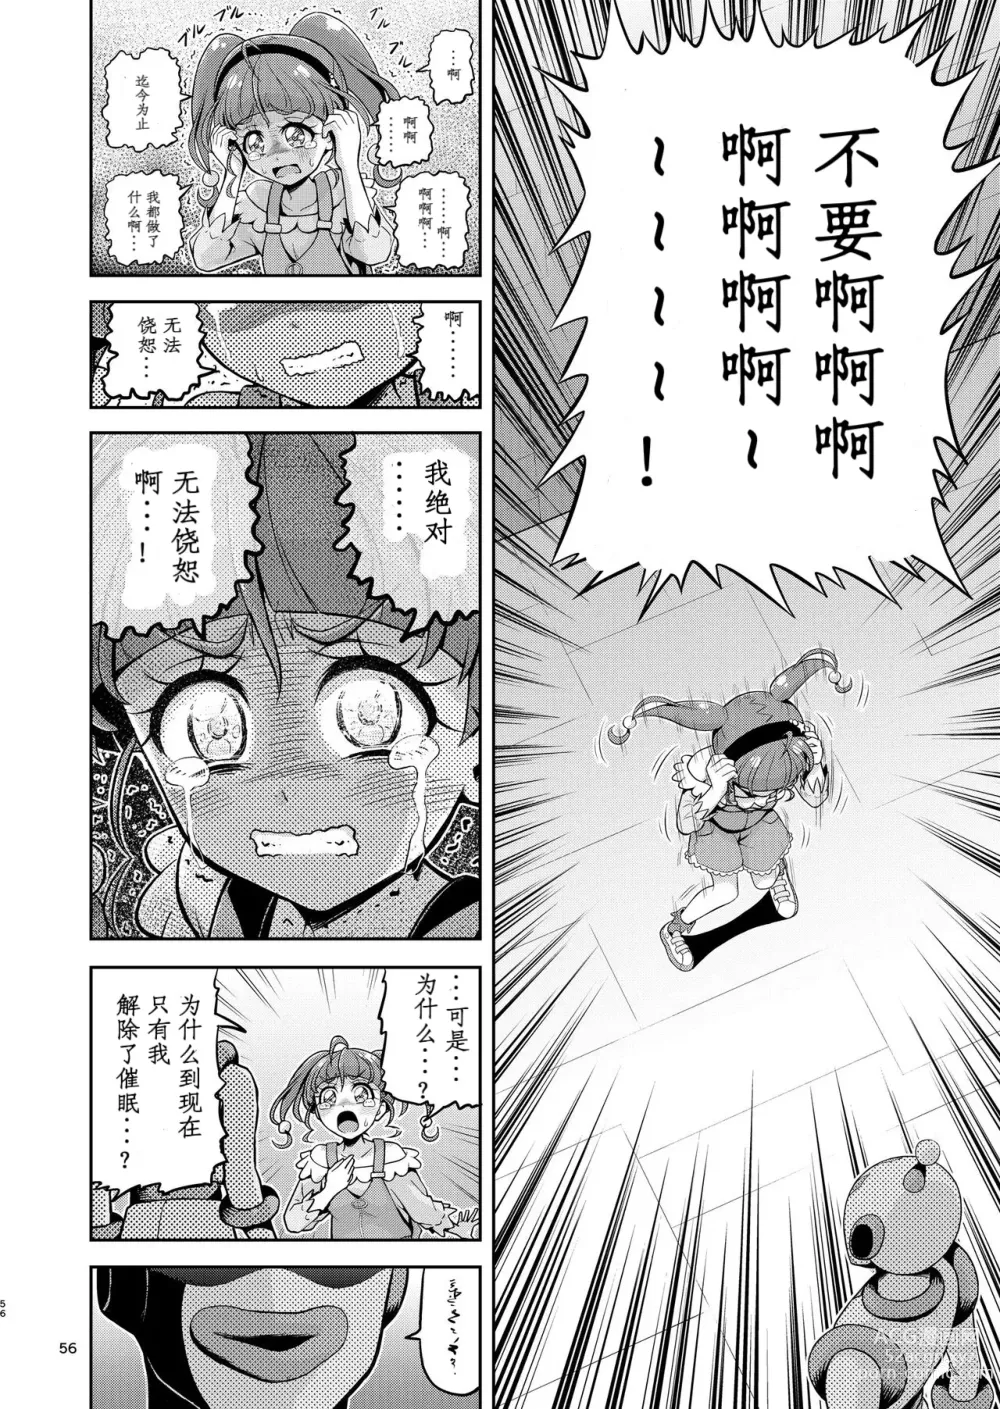 Page 6 of doujinshi Hoshi Asobi 2